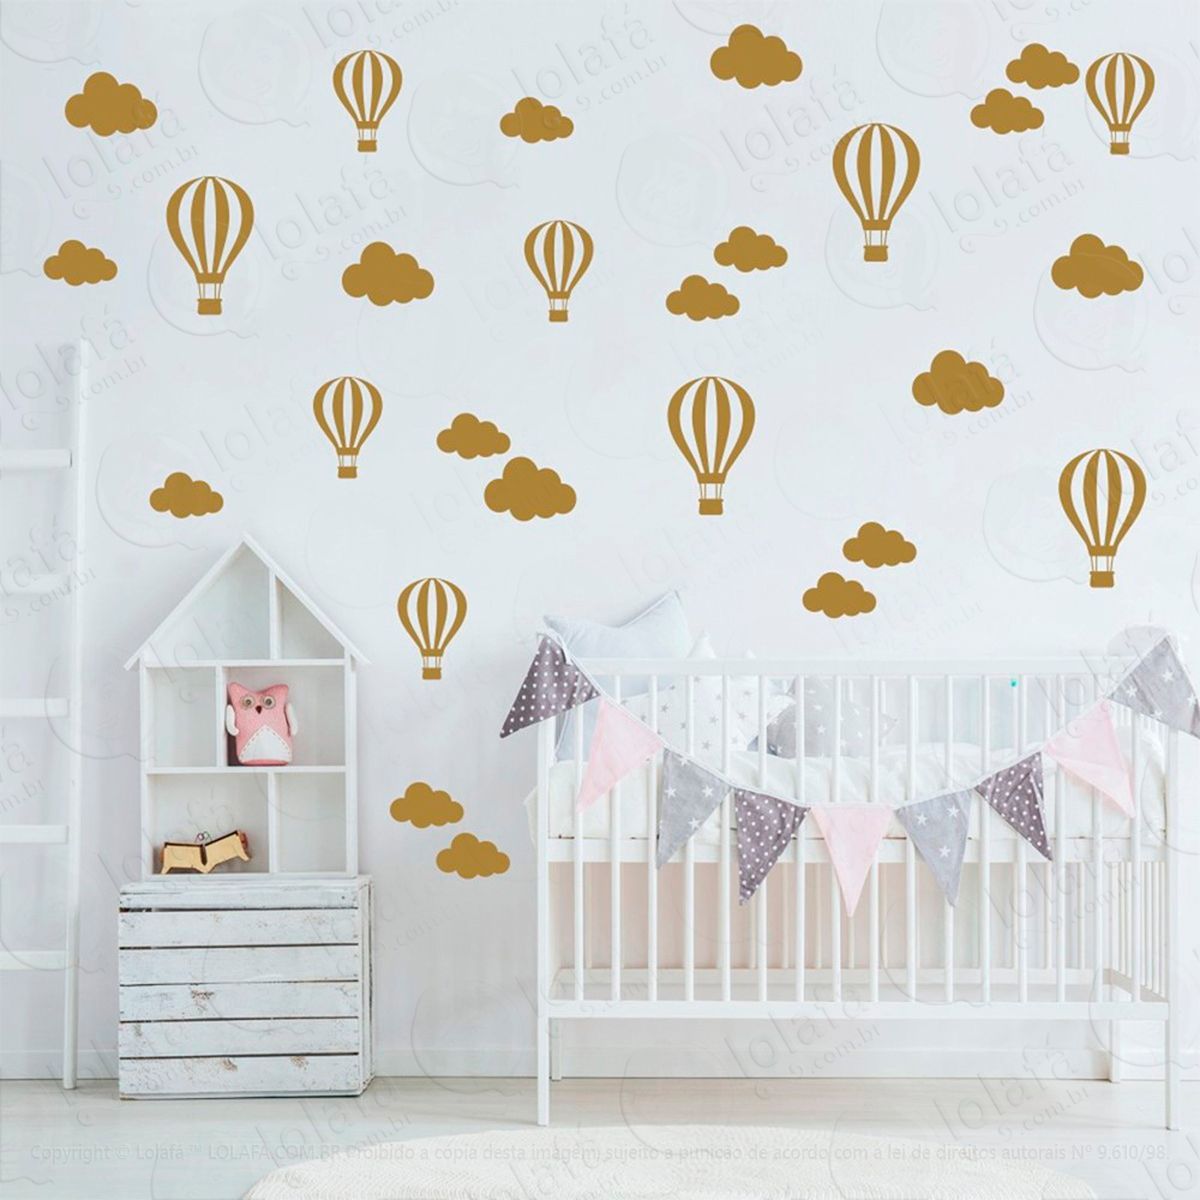 adesivos nuvens e balões 50 peças adesivos para quarto de bebê infantil - mod:840